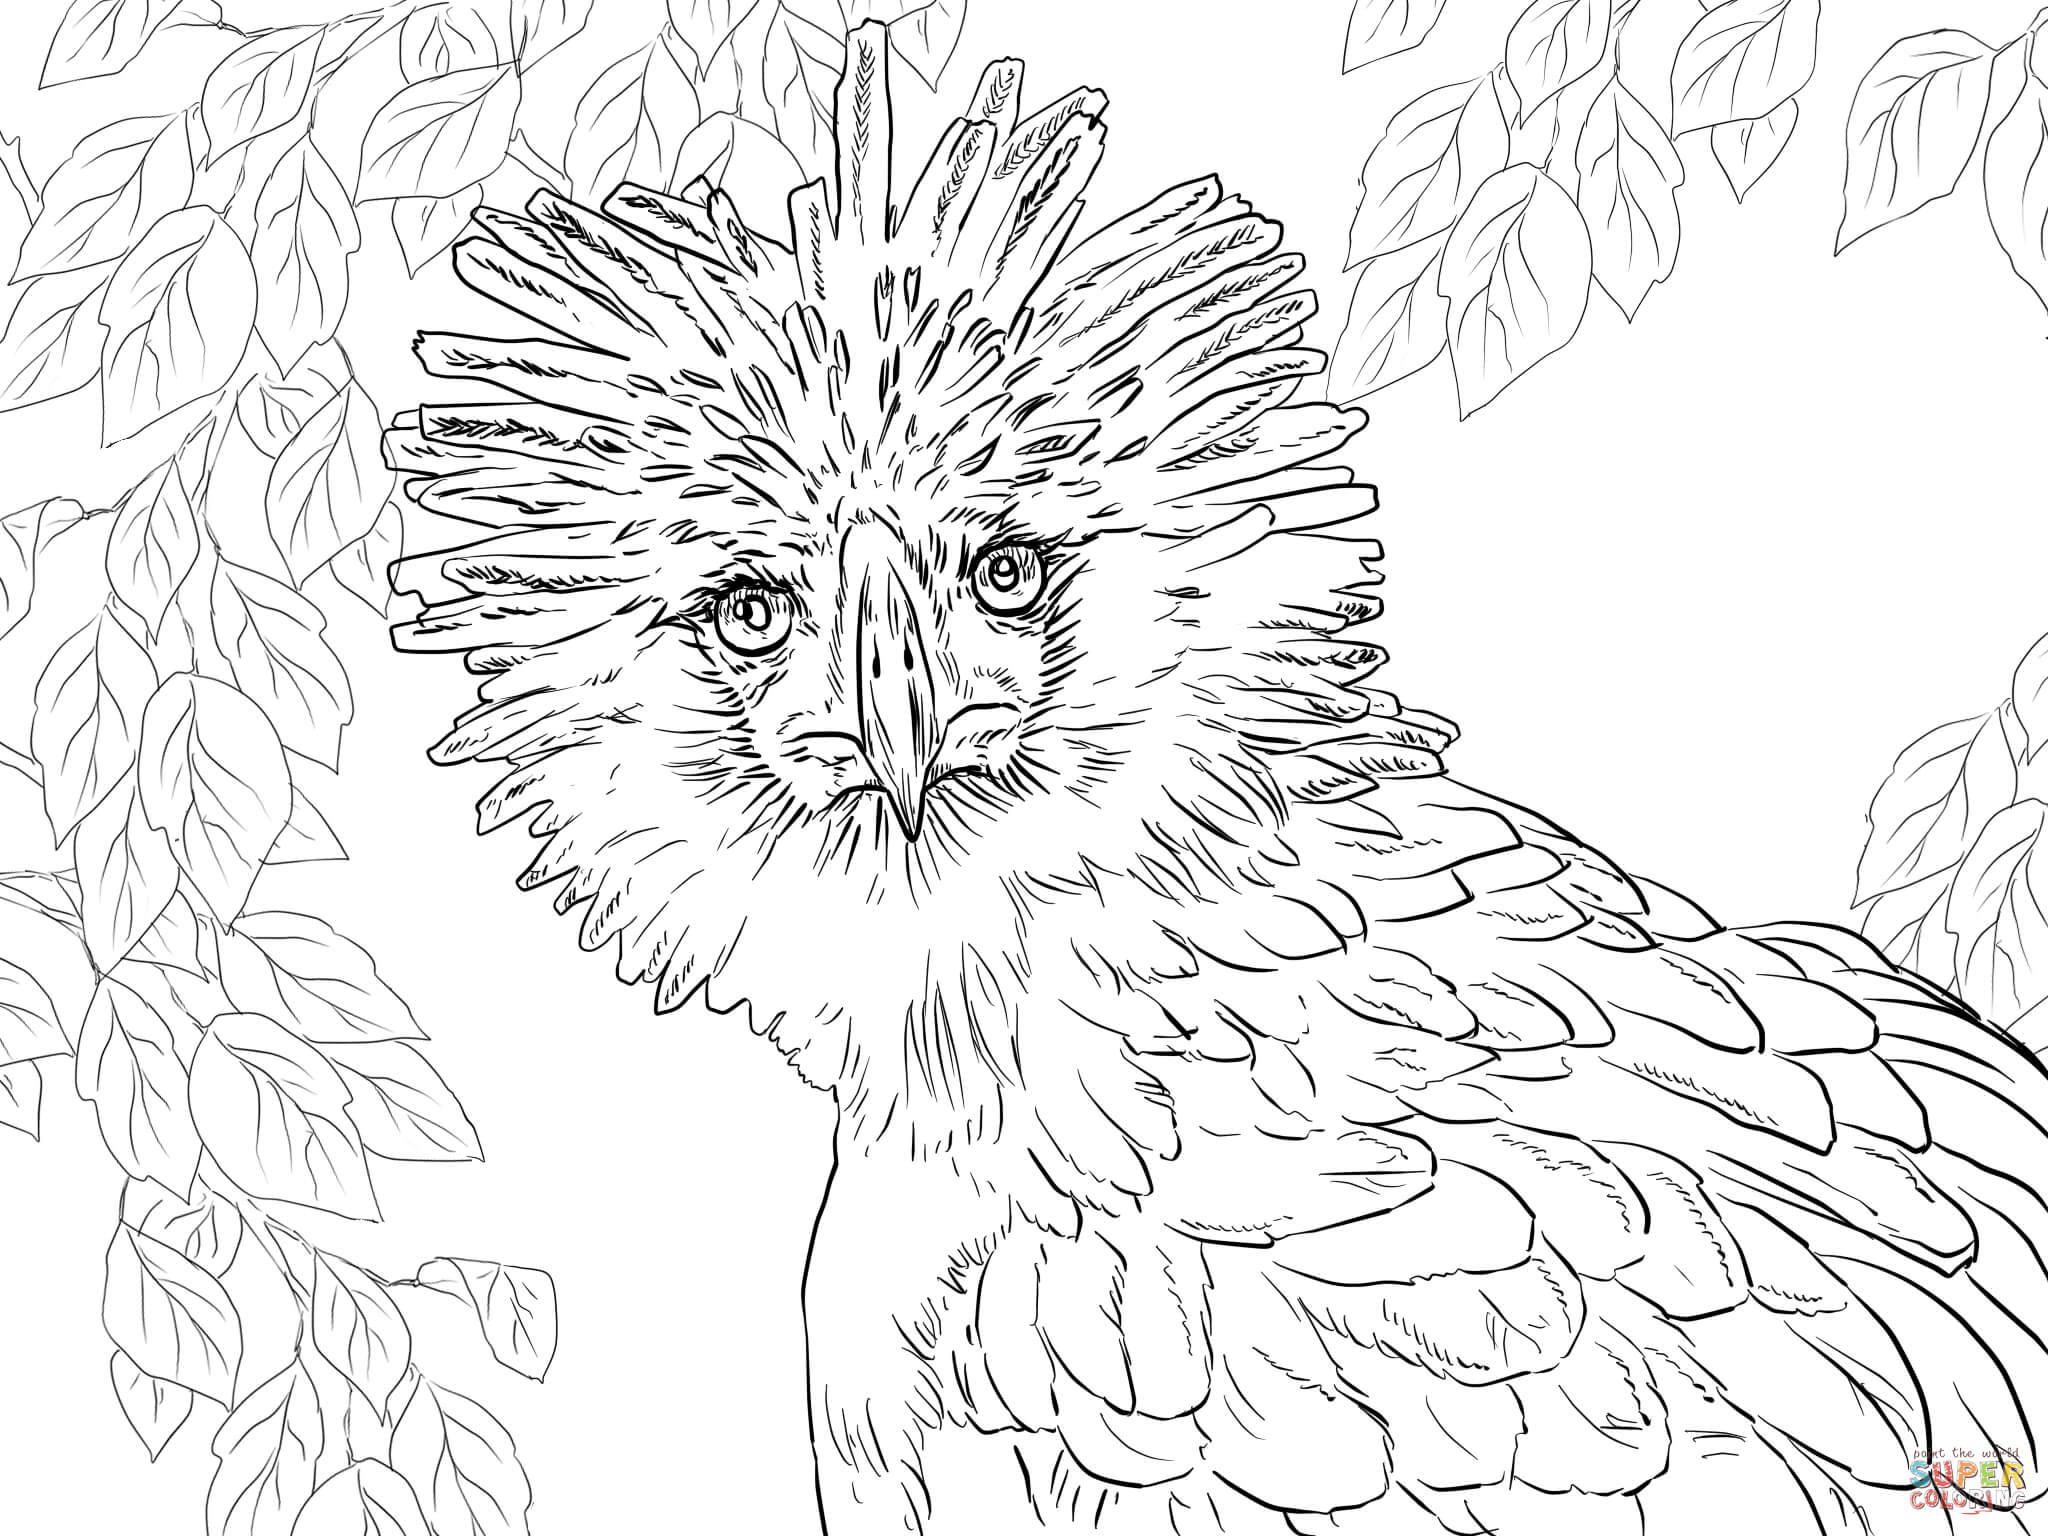 Adler coloring #3, Download drawings